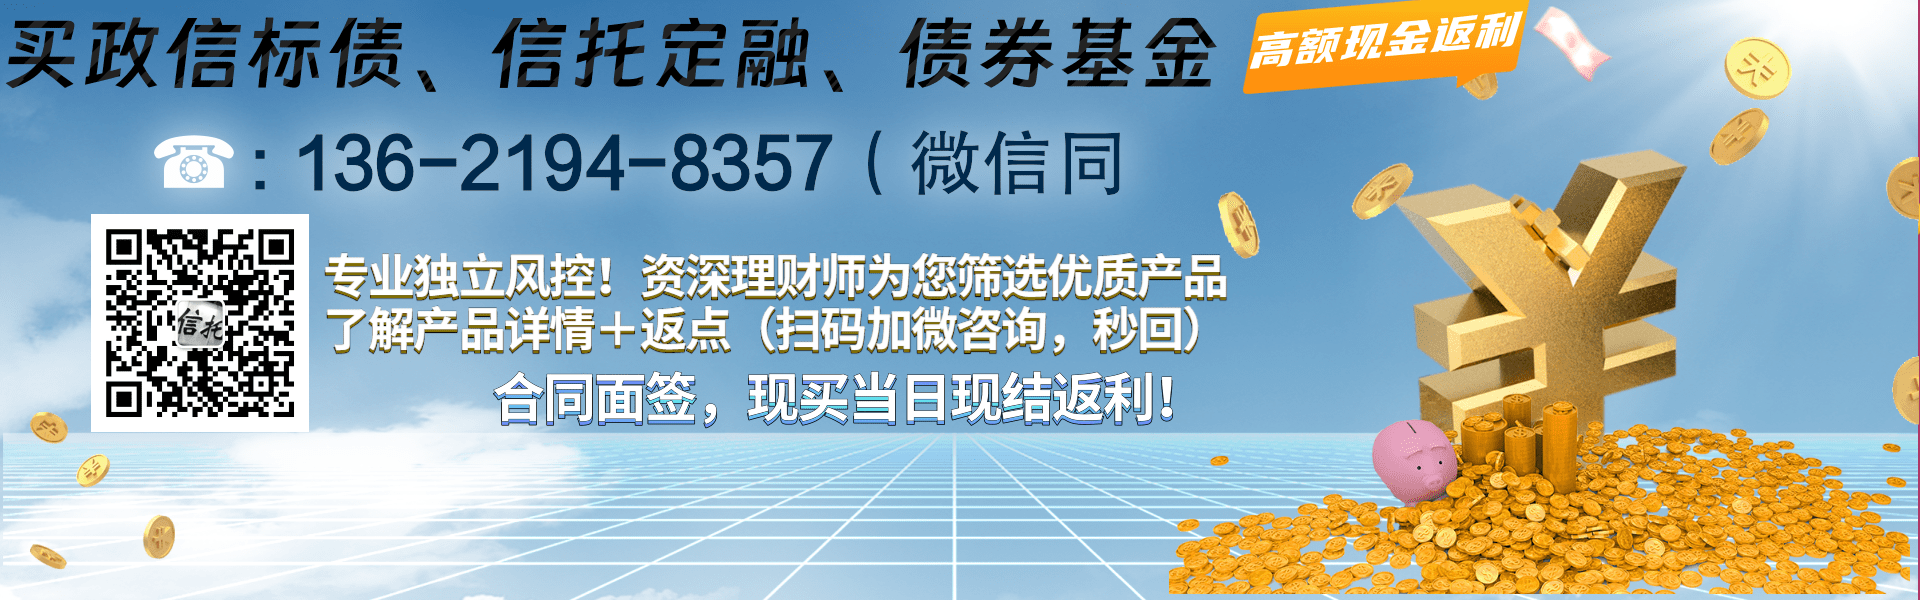 金堂县兴金开发建设投资2023债权资产转让系列产品